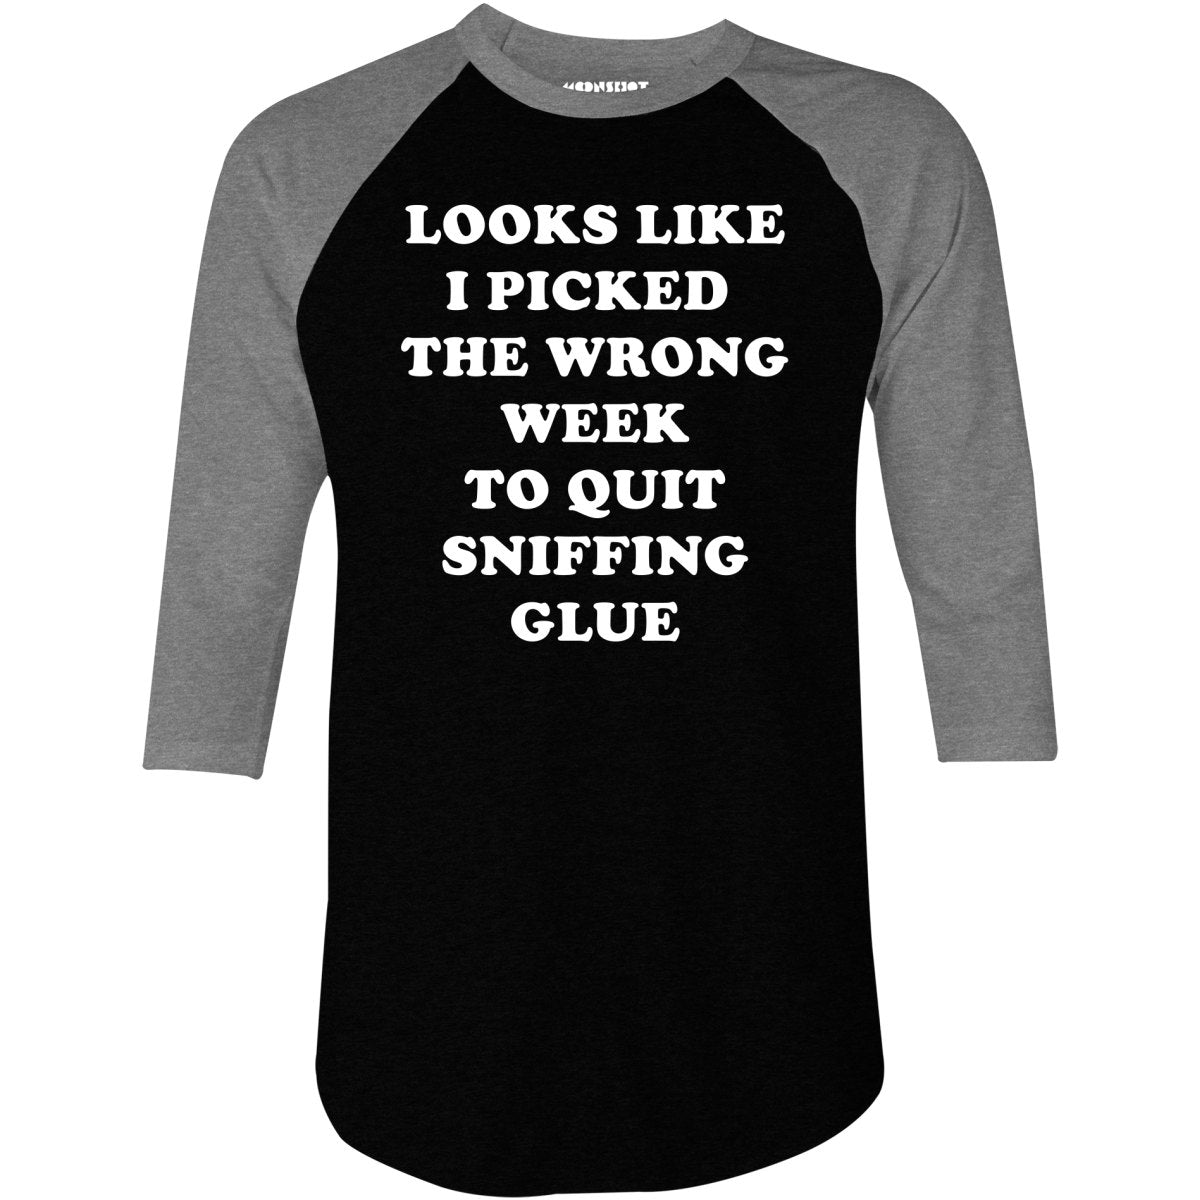 The Wrong Week - 3/4 Sleeve Raglan T-Shirt